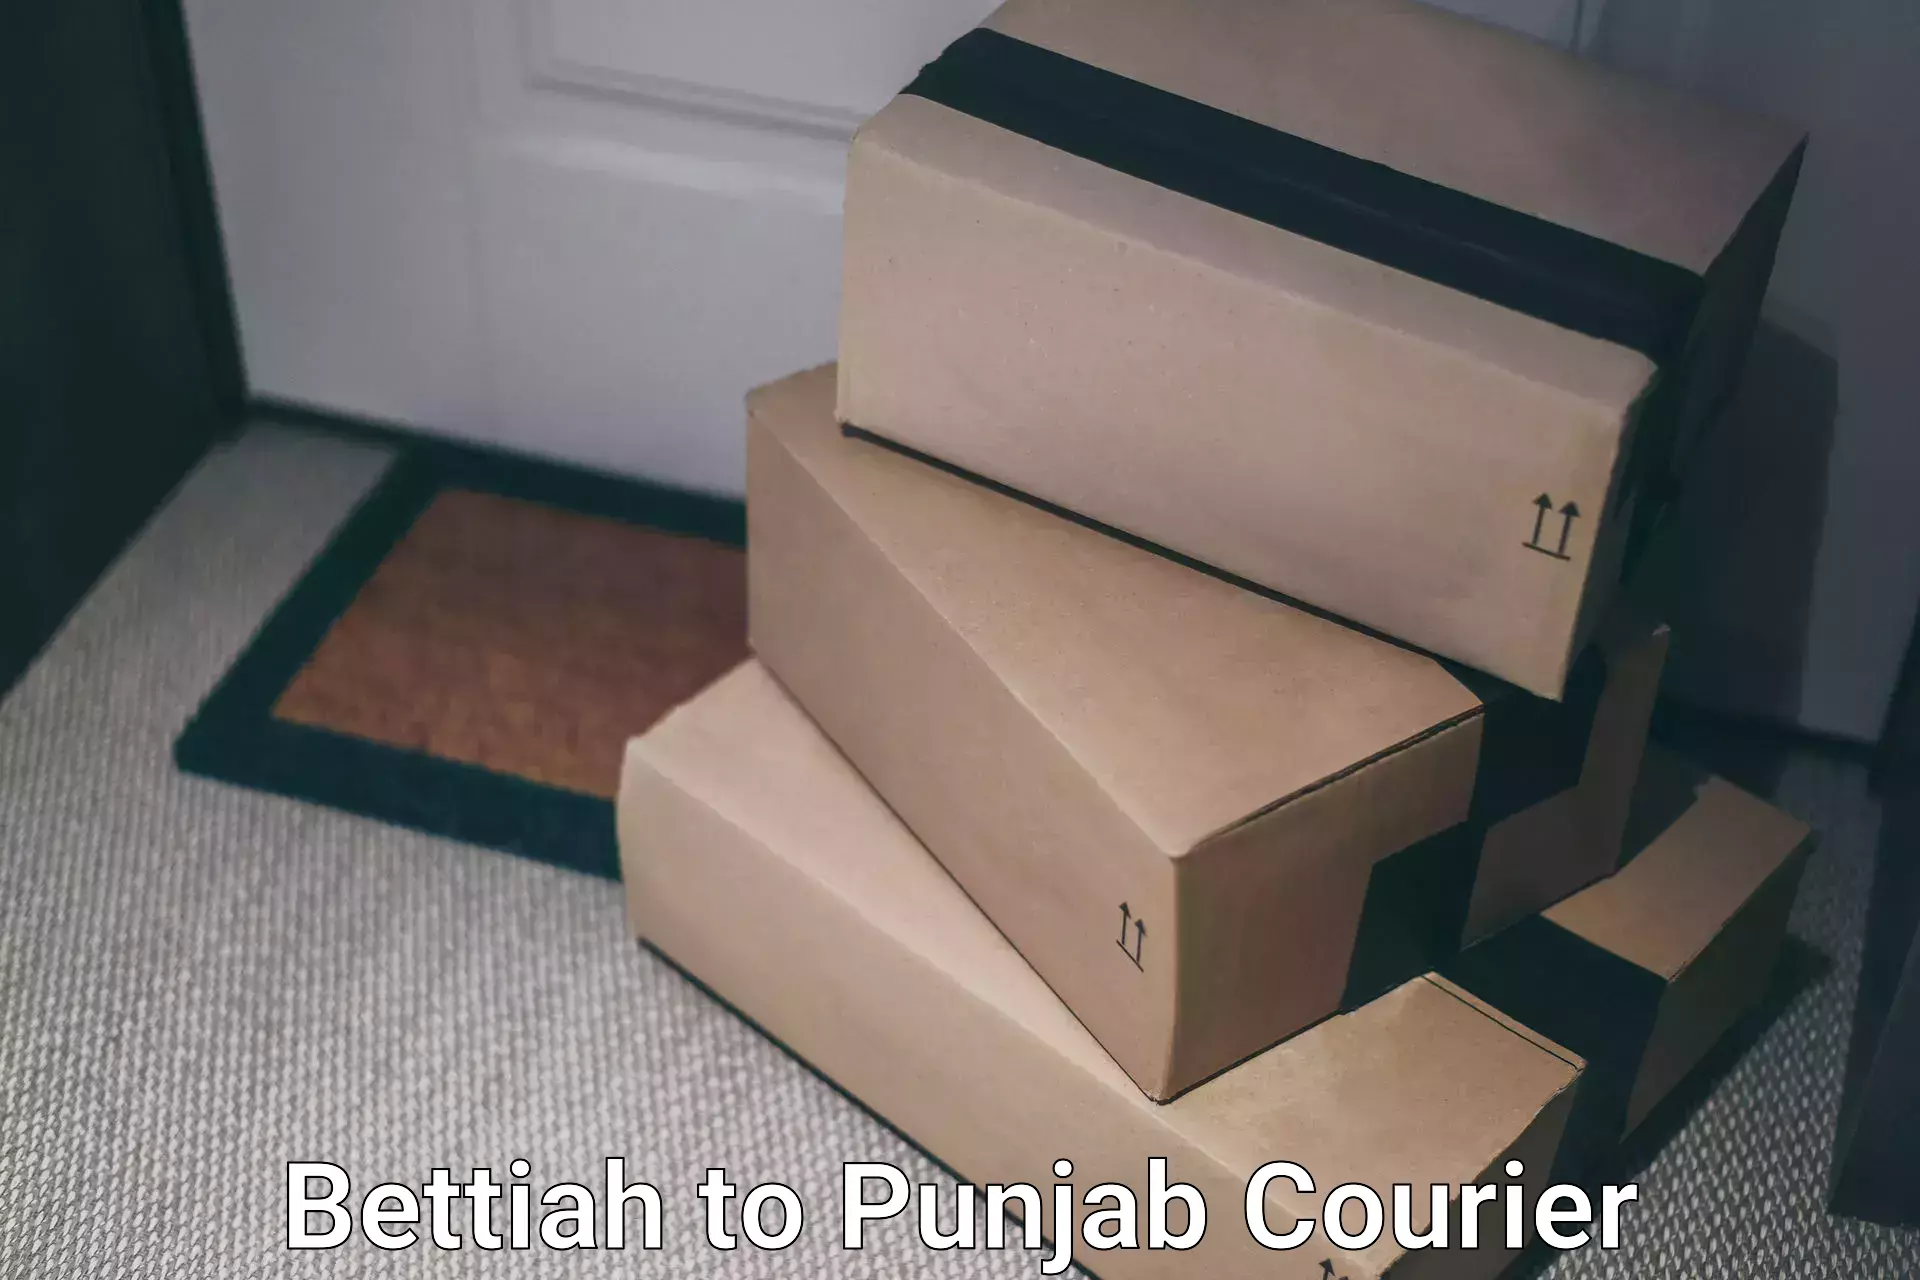 Punctual parcel services Bettiah to Abohar